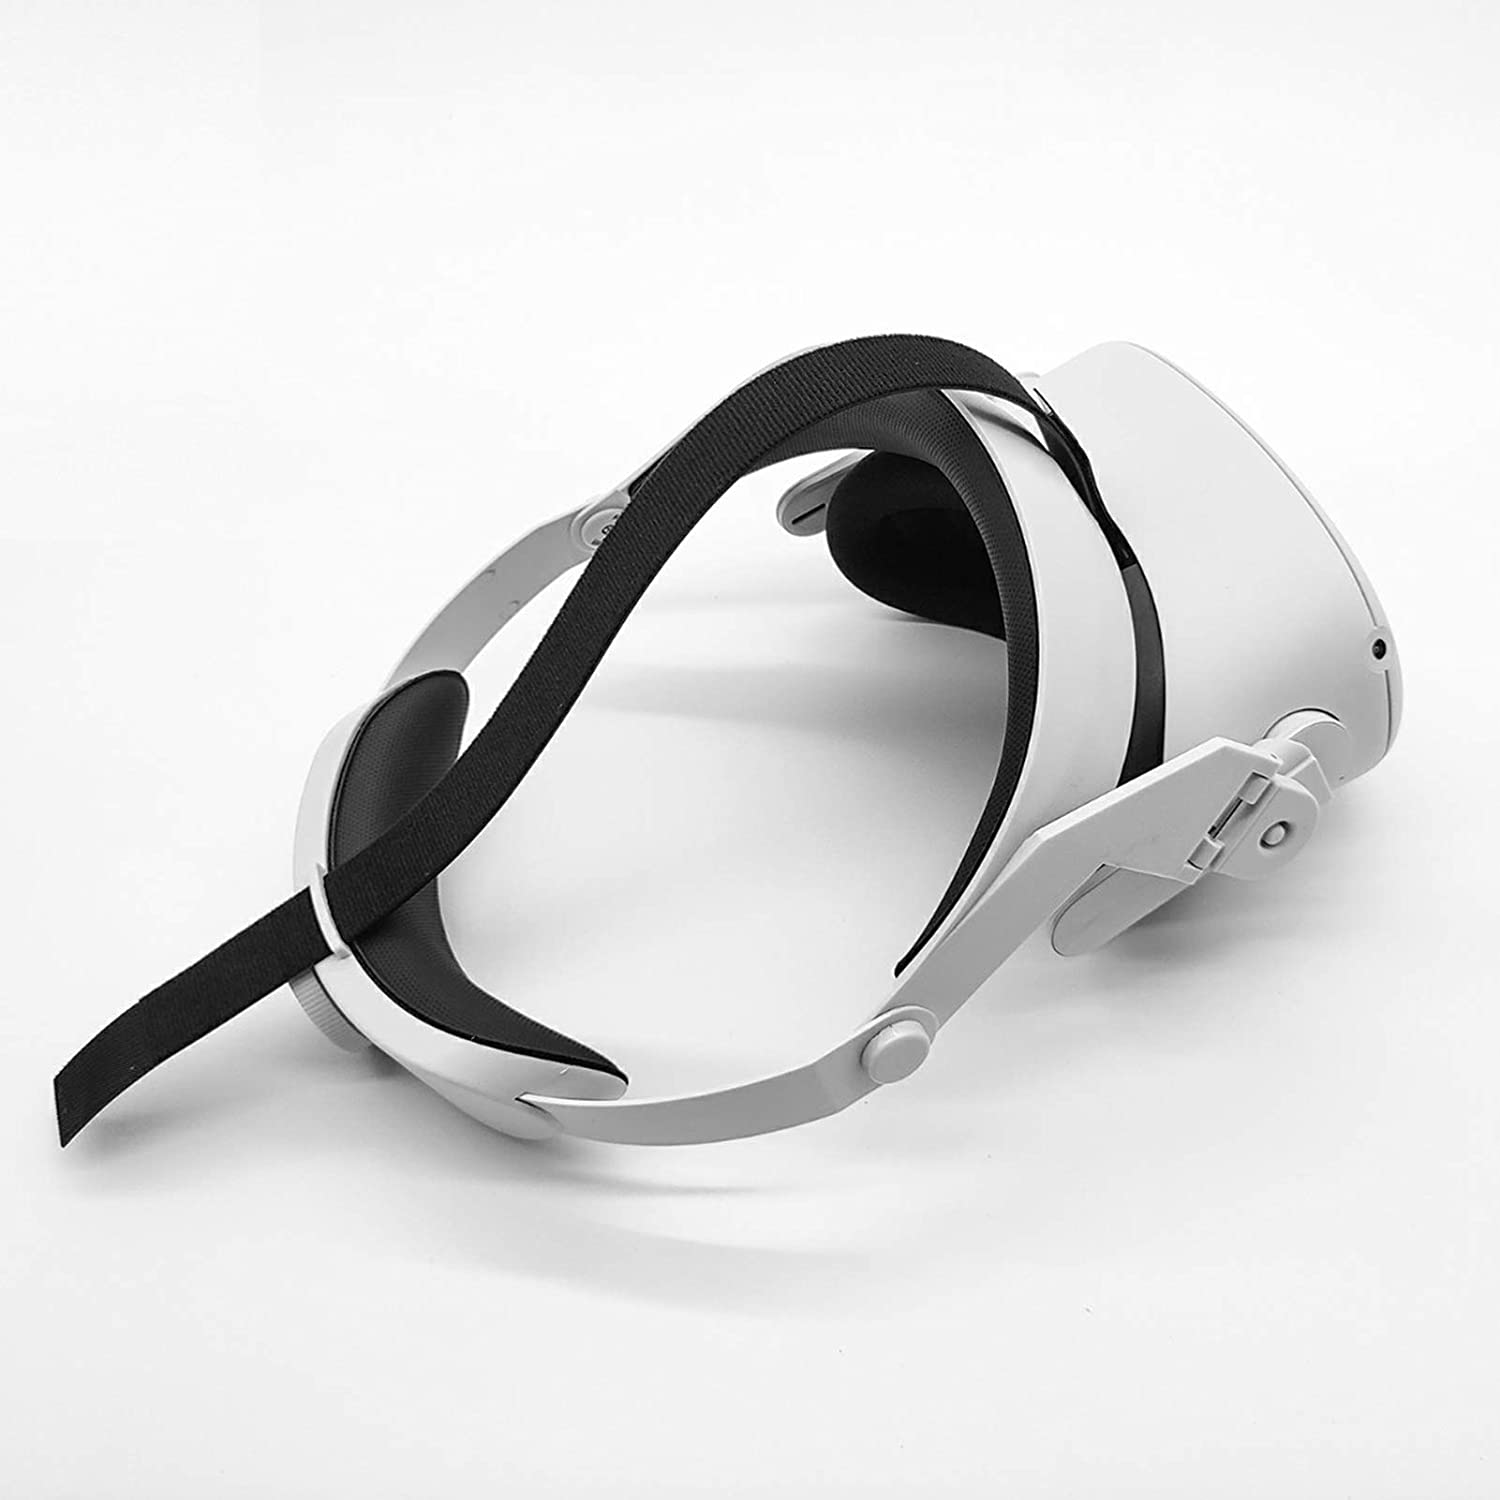 "Halo" fejpánt az Oculus Quest 2 VR hez